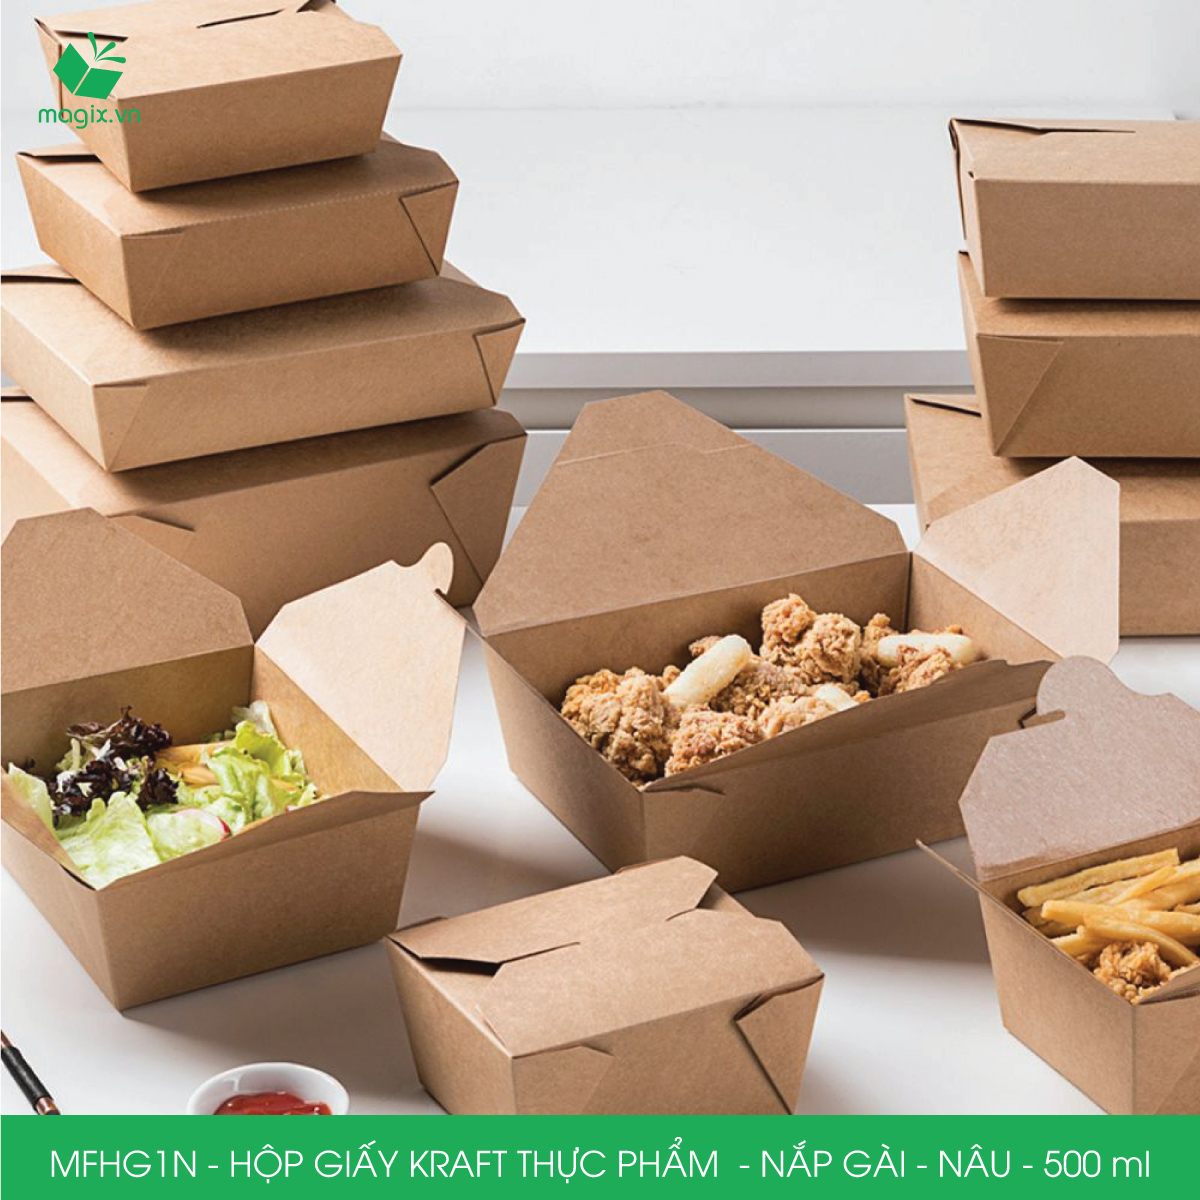 MFHG1N - 100 hộp giấy kraft thực phẩm 500ml, hộp giấy nắp gập màu nâu đựng thức ăn, hộp giấy nắp gài gói đồ ăn mang đi 